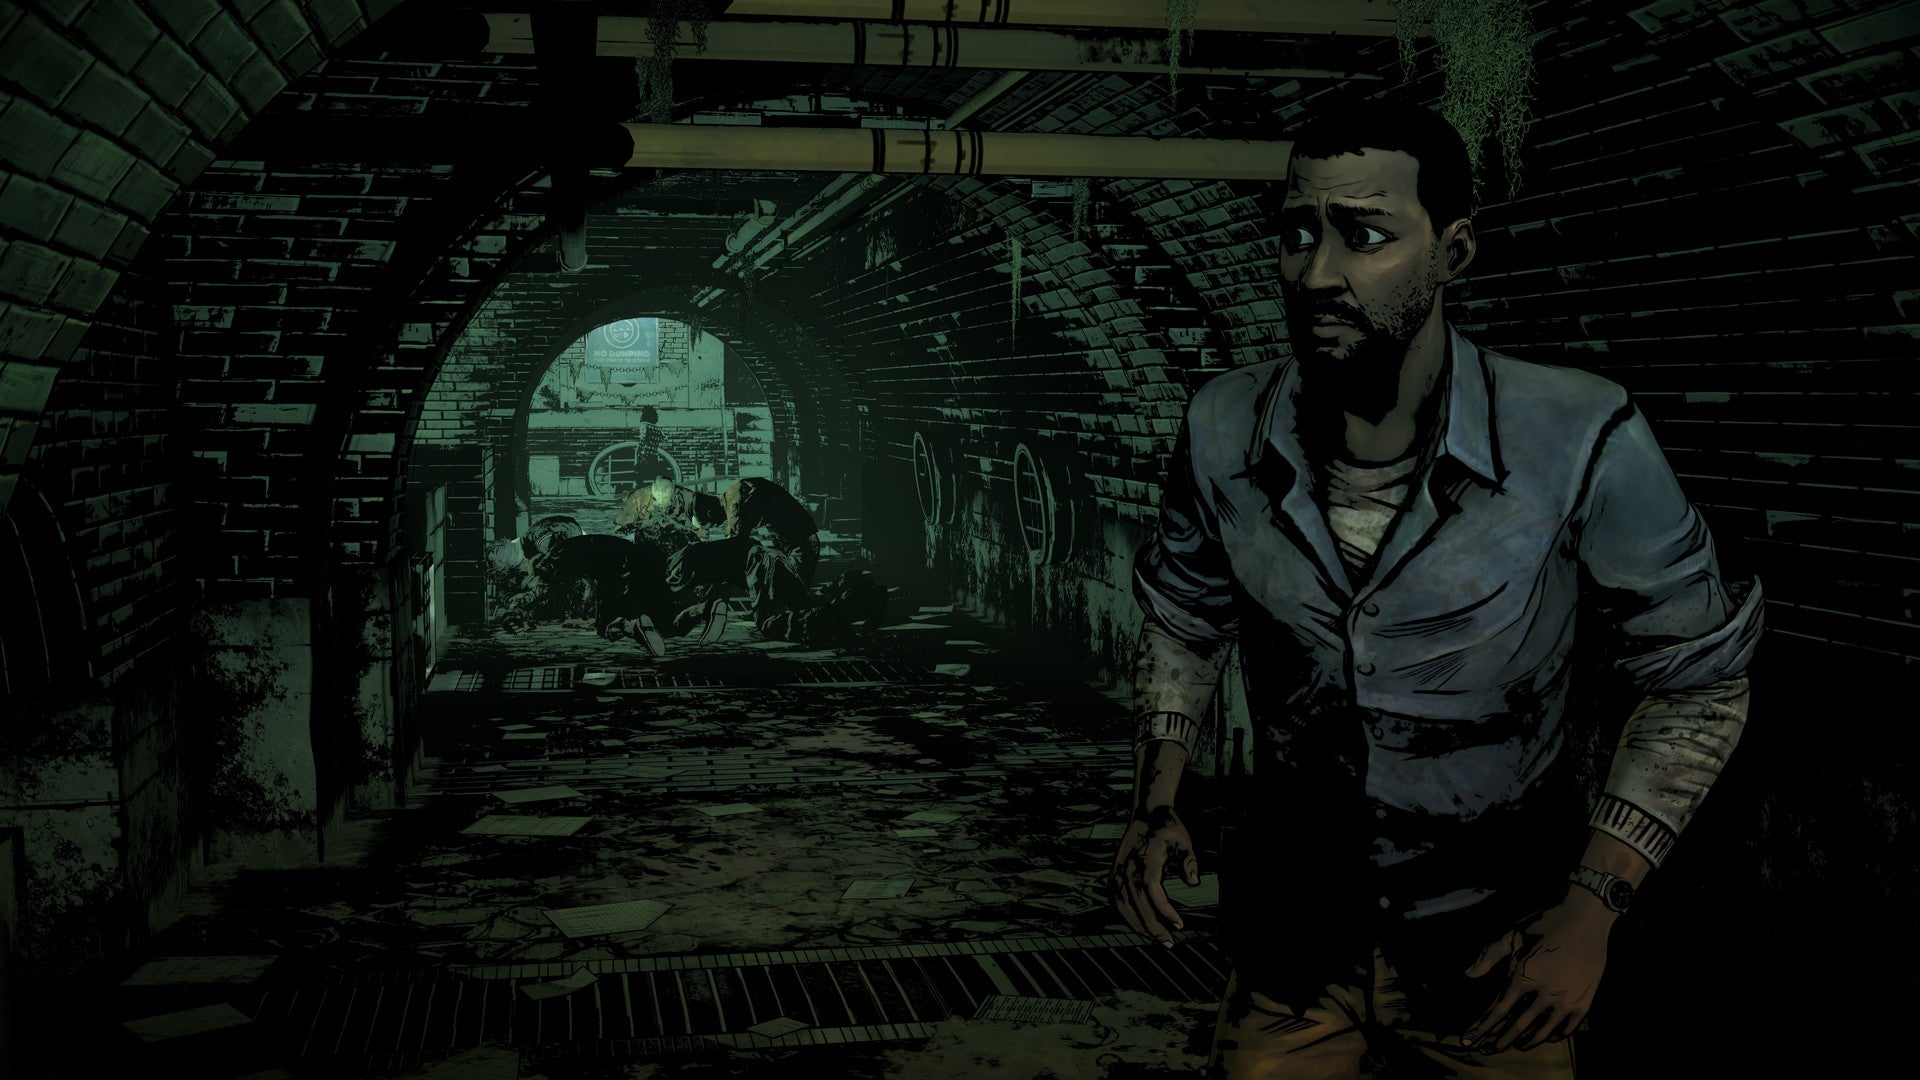 Screen from Telltale Games' The Walking Dead